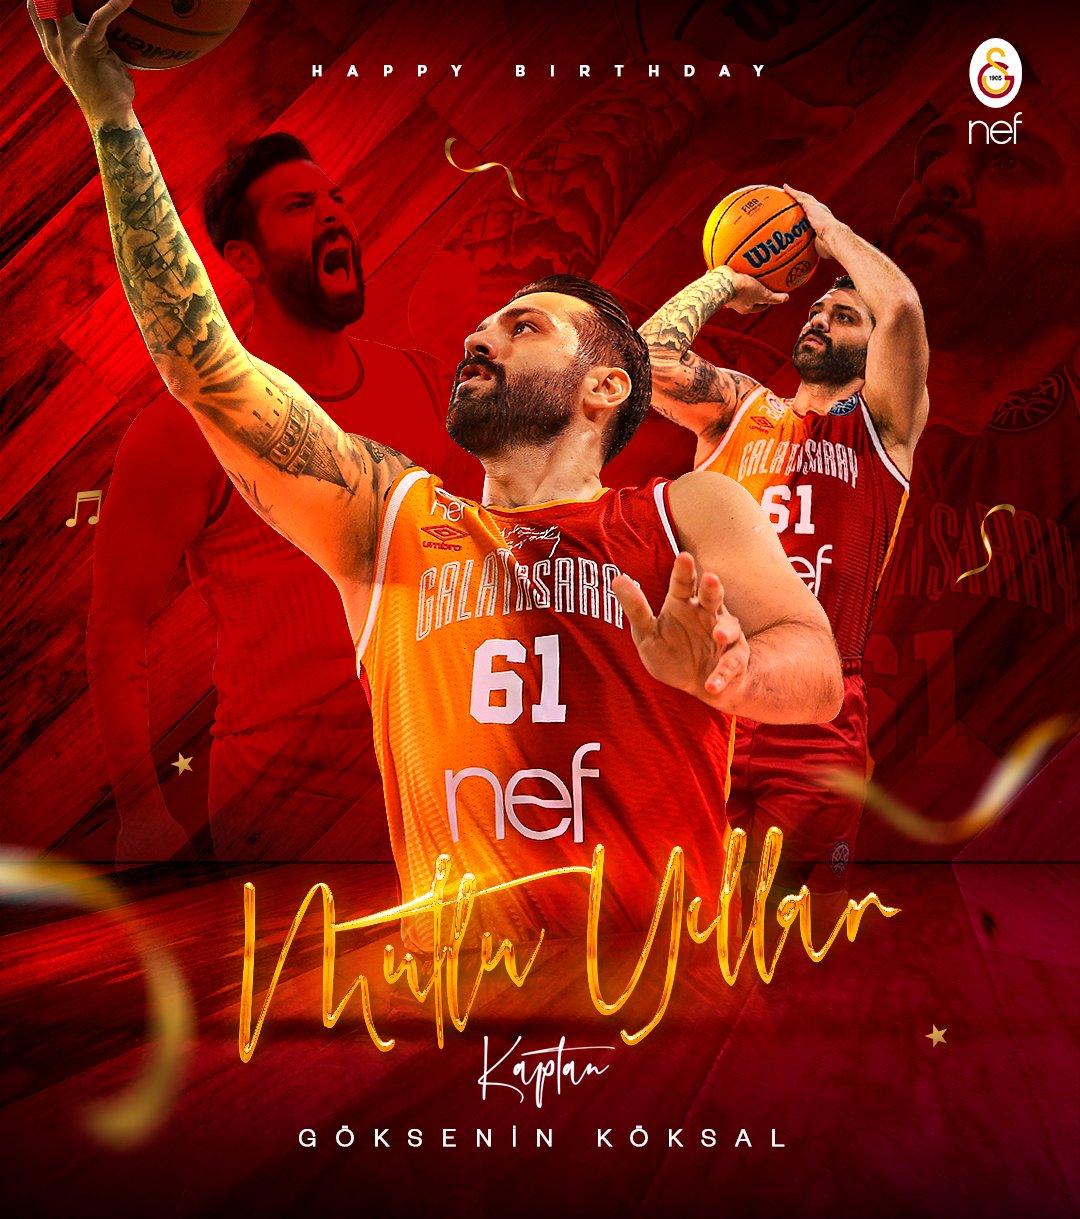 Galatasaray SK on X: Bugün, Galatasaray Nef Erkek Basketbol Takımımızın  kaptanı Göksenin Köksal'ın doğum günü! 🎂 İyi ki doğdun @61goksenin! 🥳   / X